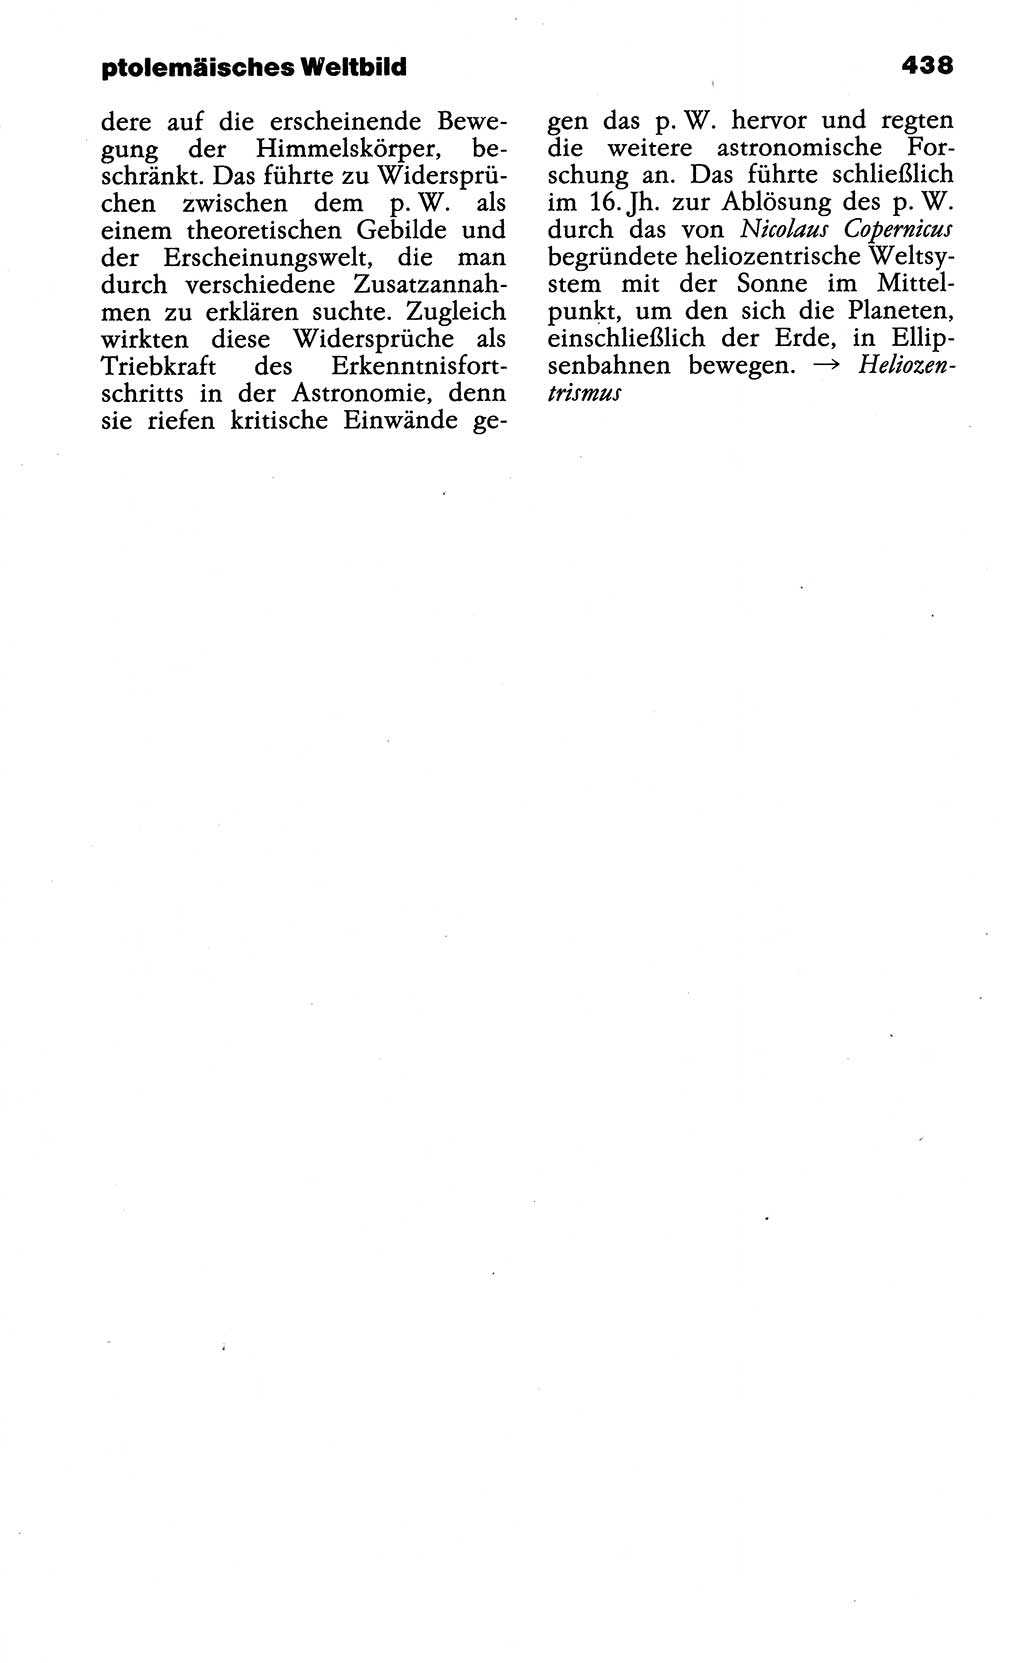 Wörterbuch der marxistisch-leninistischen Philosophie [Deutsche Demokratische Republik (DDR)] 1985, Seite 438 (Wb. ML Phil. DDR 1985, S. 438)